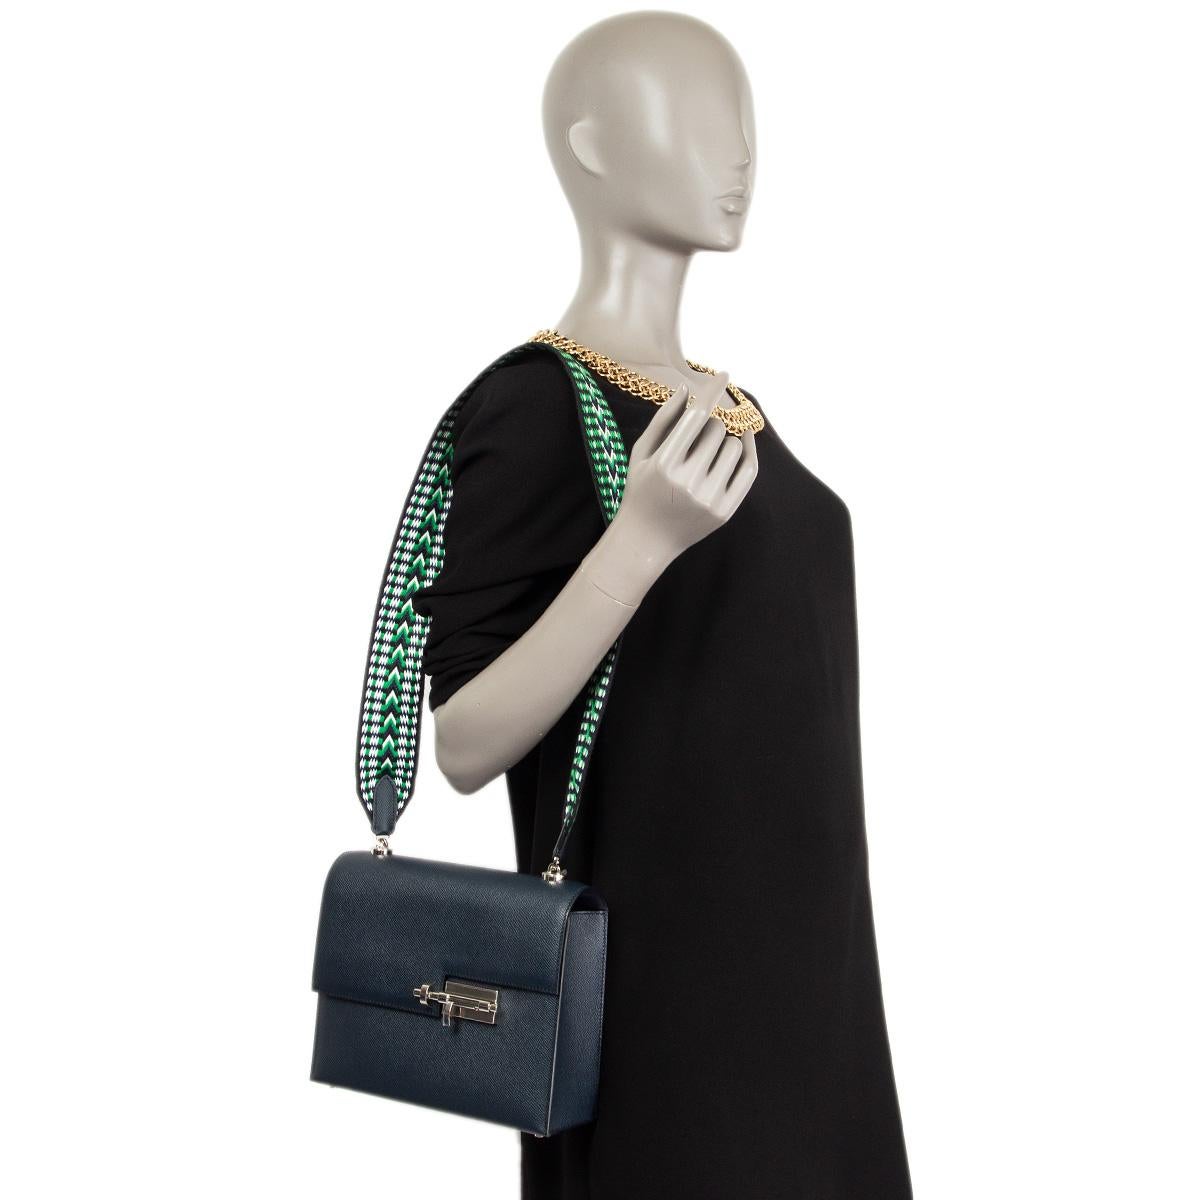 100% authentische Hermès Verrou 21 große Umhängetasche aus Bleu Nuit Veau Epsom (Kalbsleder) mit silberfarbenem Palladium-Beschlag. Die Tasche lässt sich mit einem Palladium-beschichteten Schiebeschloss öffnen und wird mit einem Schulterriemen aus